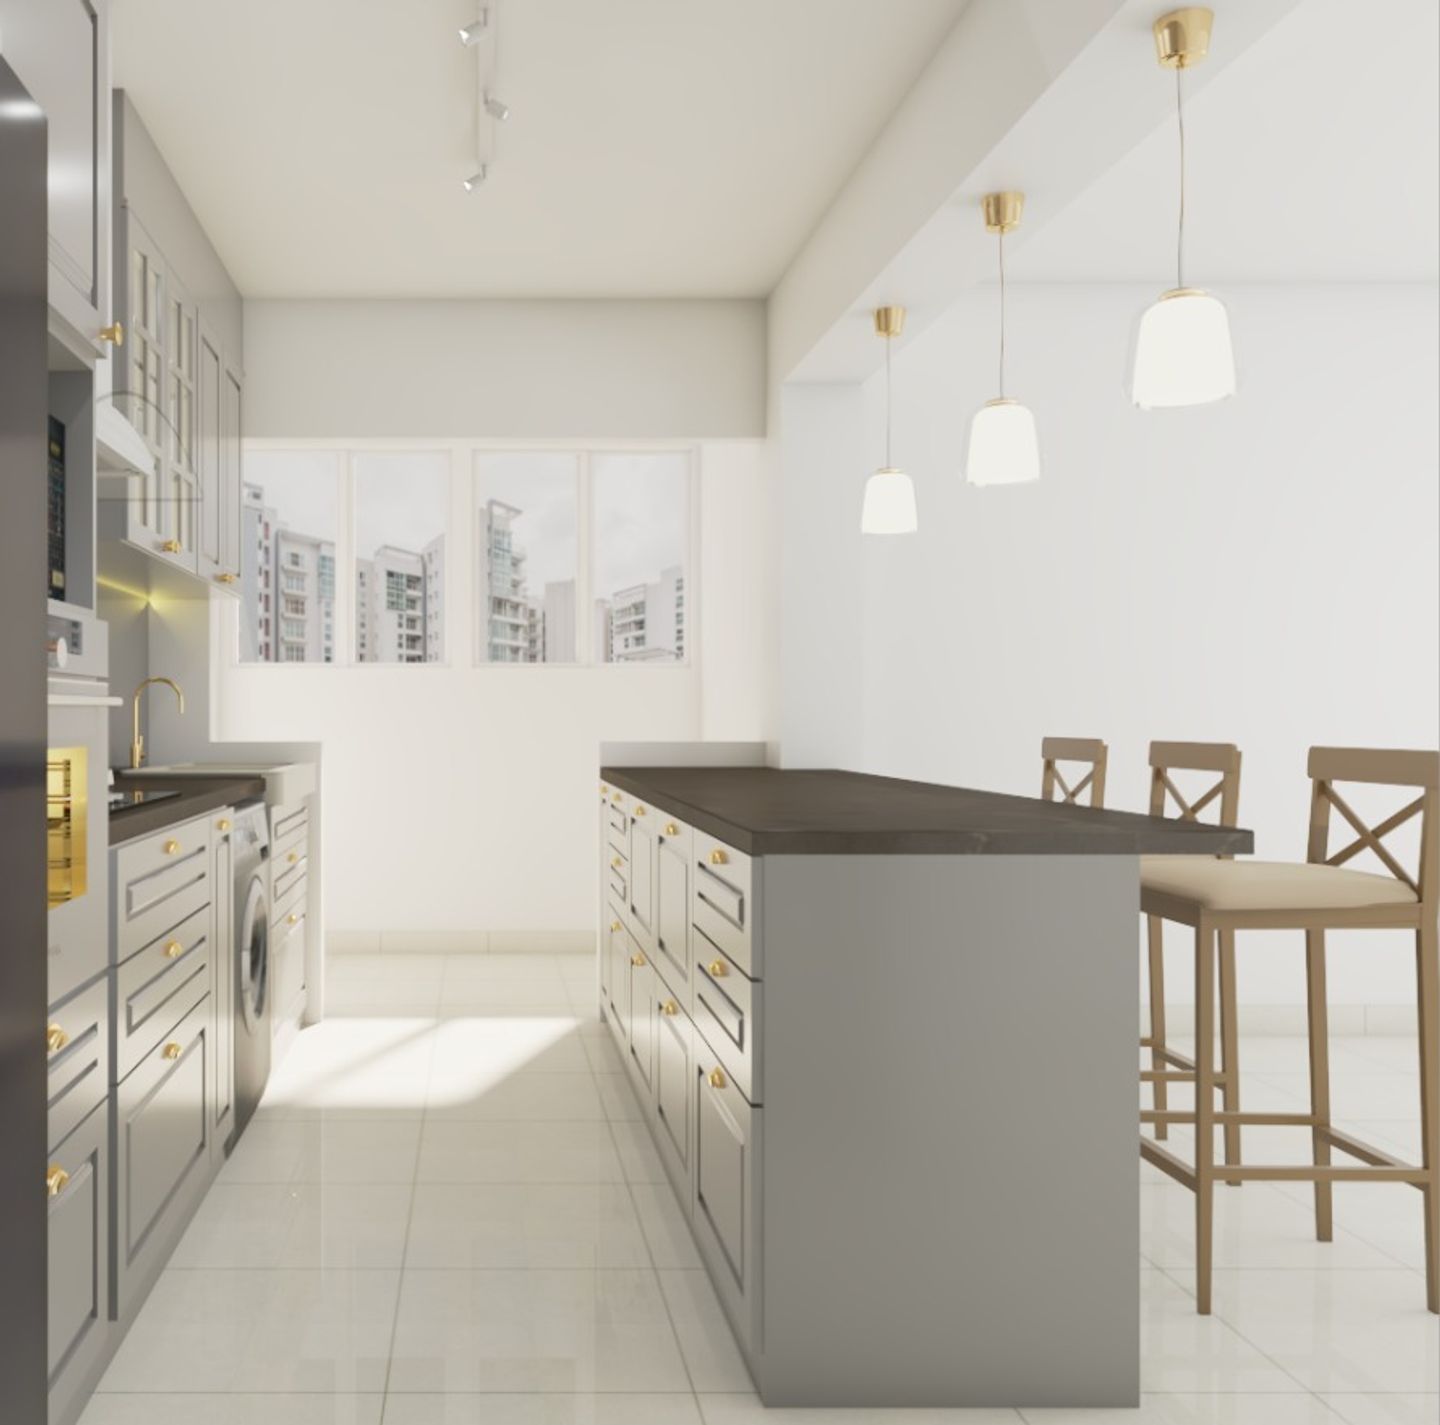 Well lit Modern Kitchen With Storage - Livspace